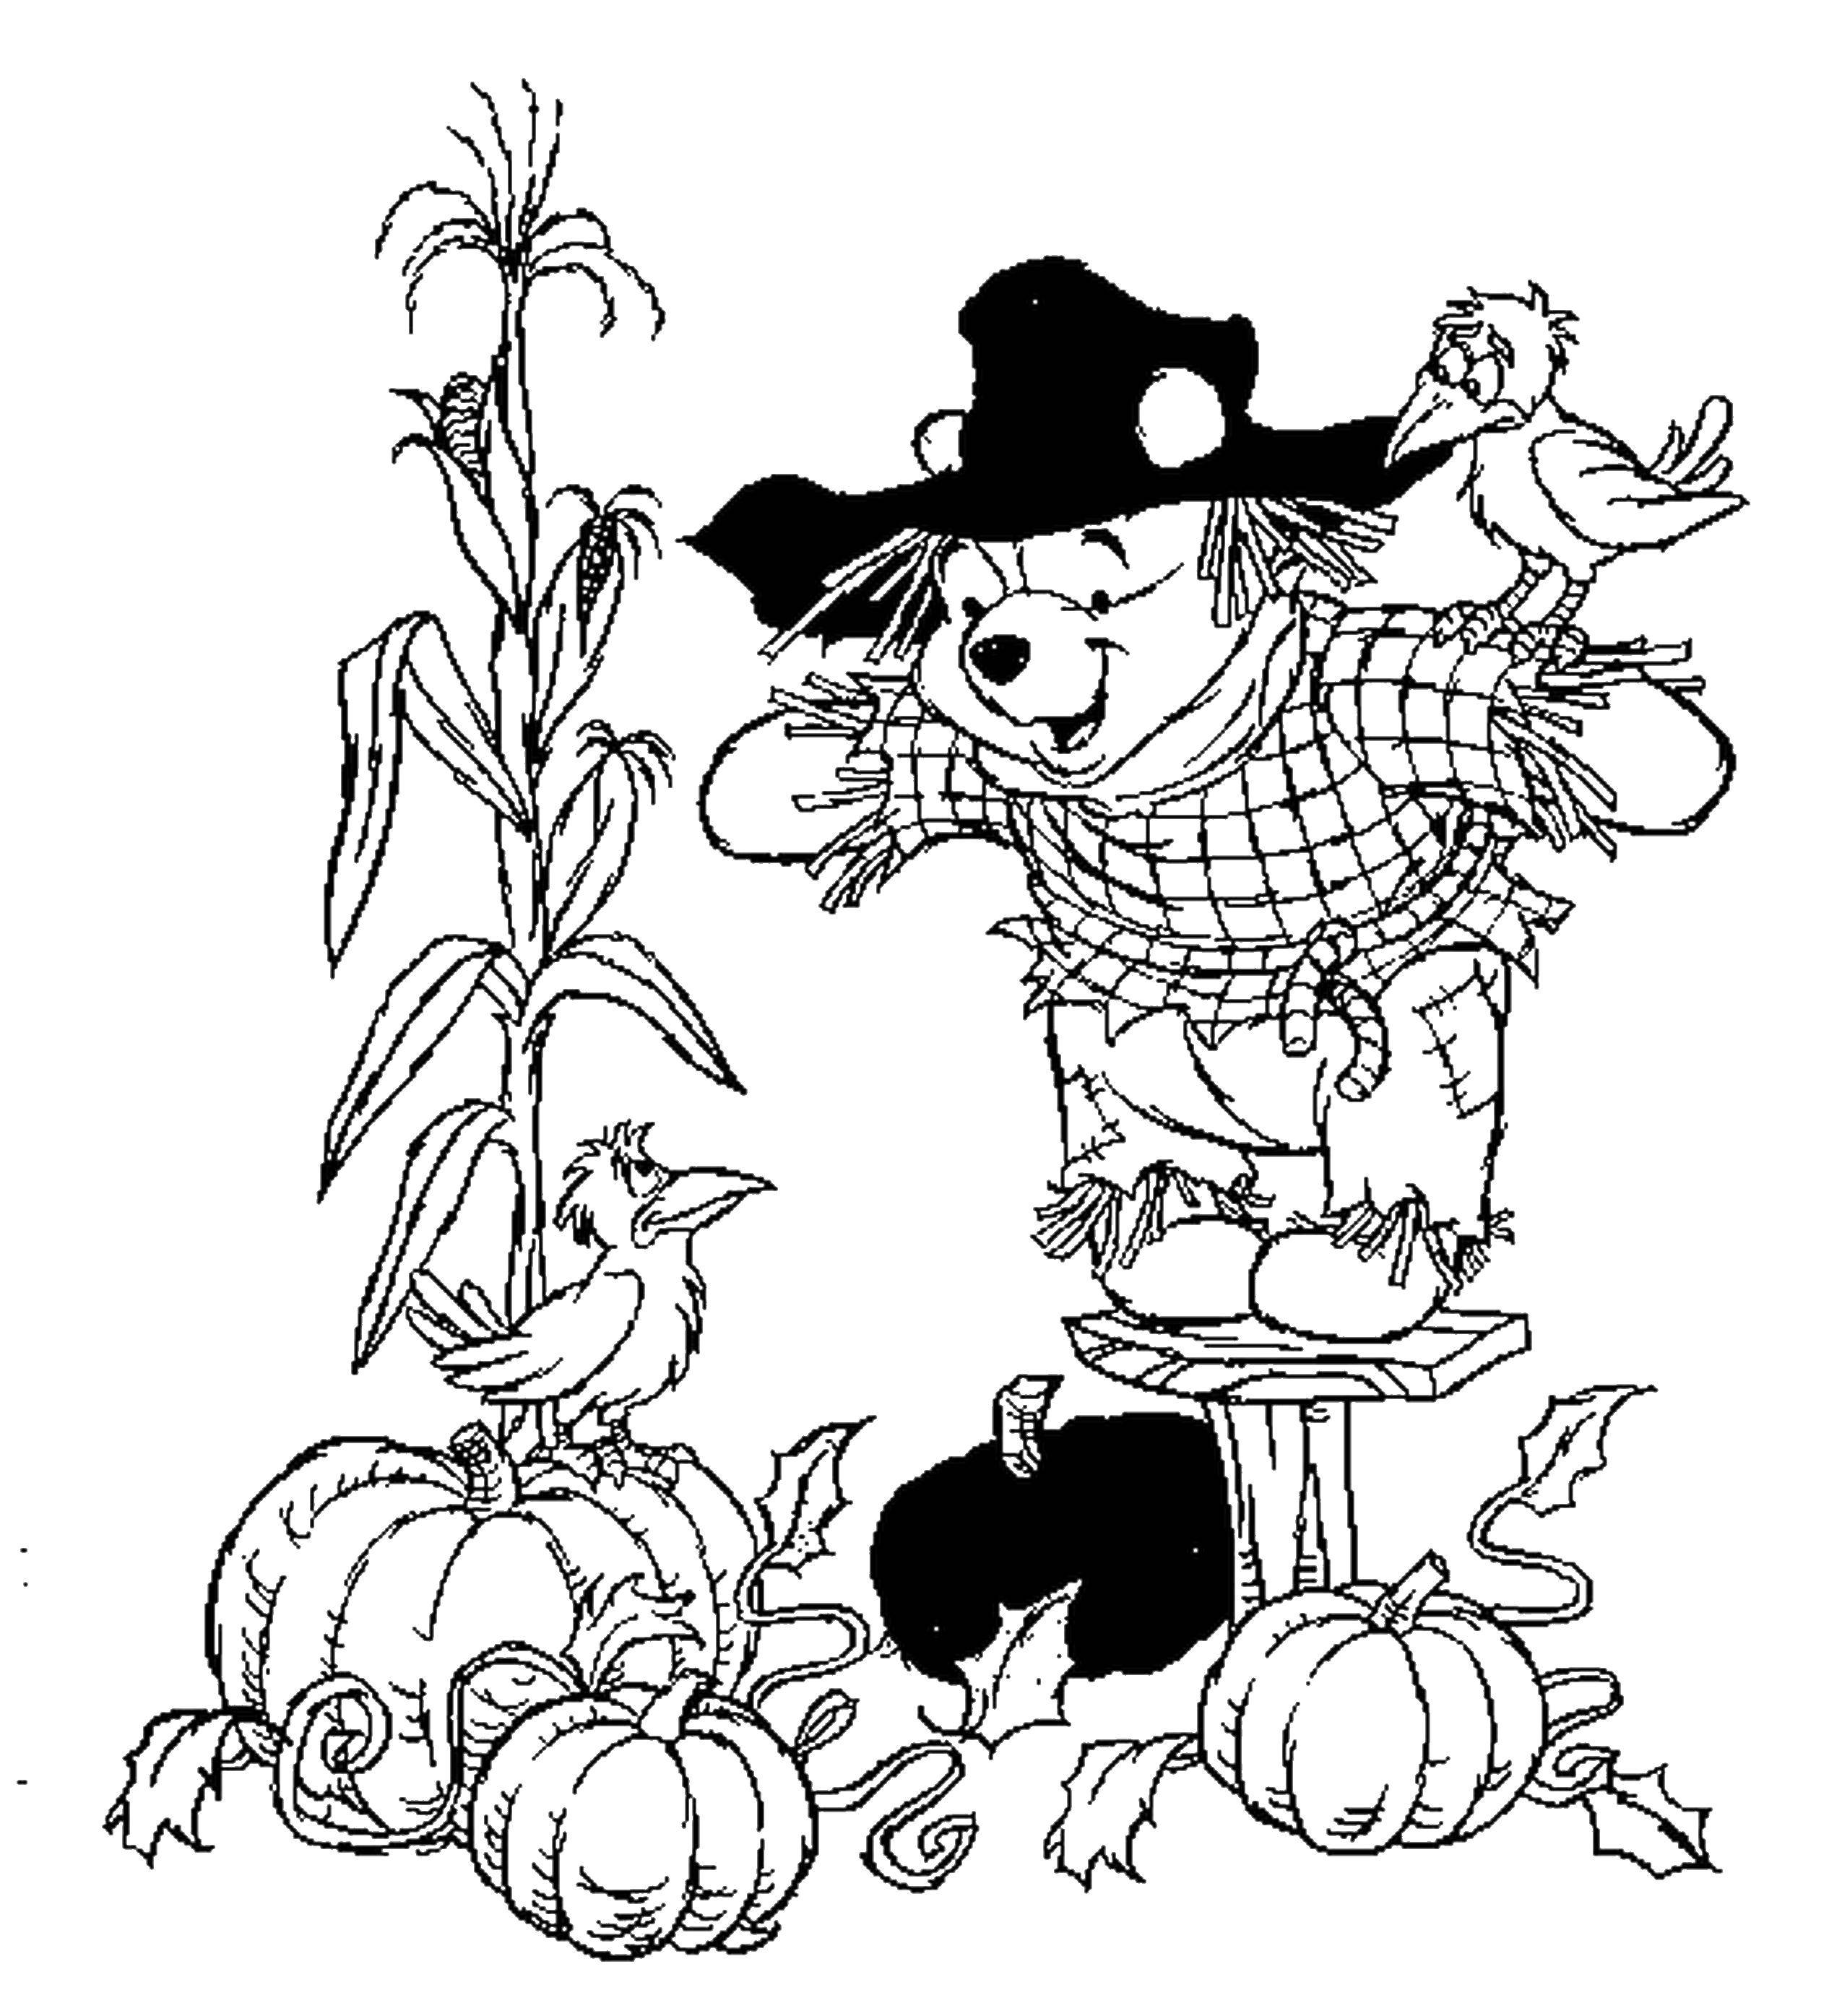 Название: Раскраска Винни пух в костюме пугала охраняет огород. Категория: Осень. Теги: пугало, тыквы, винни пух.